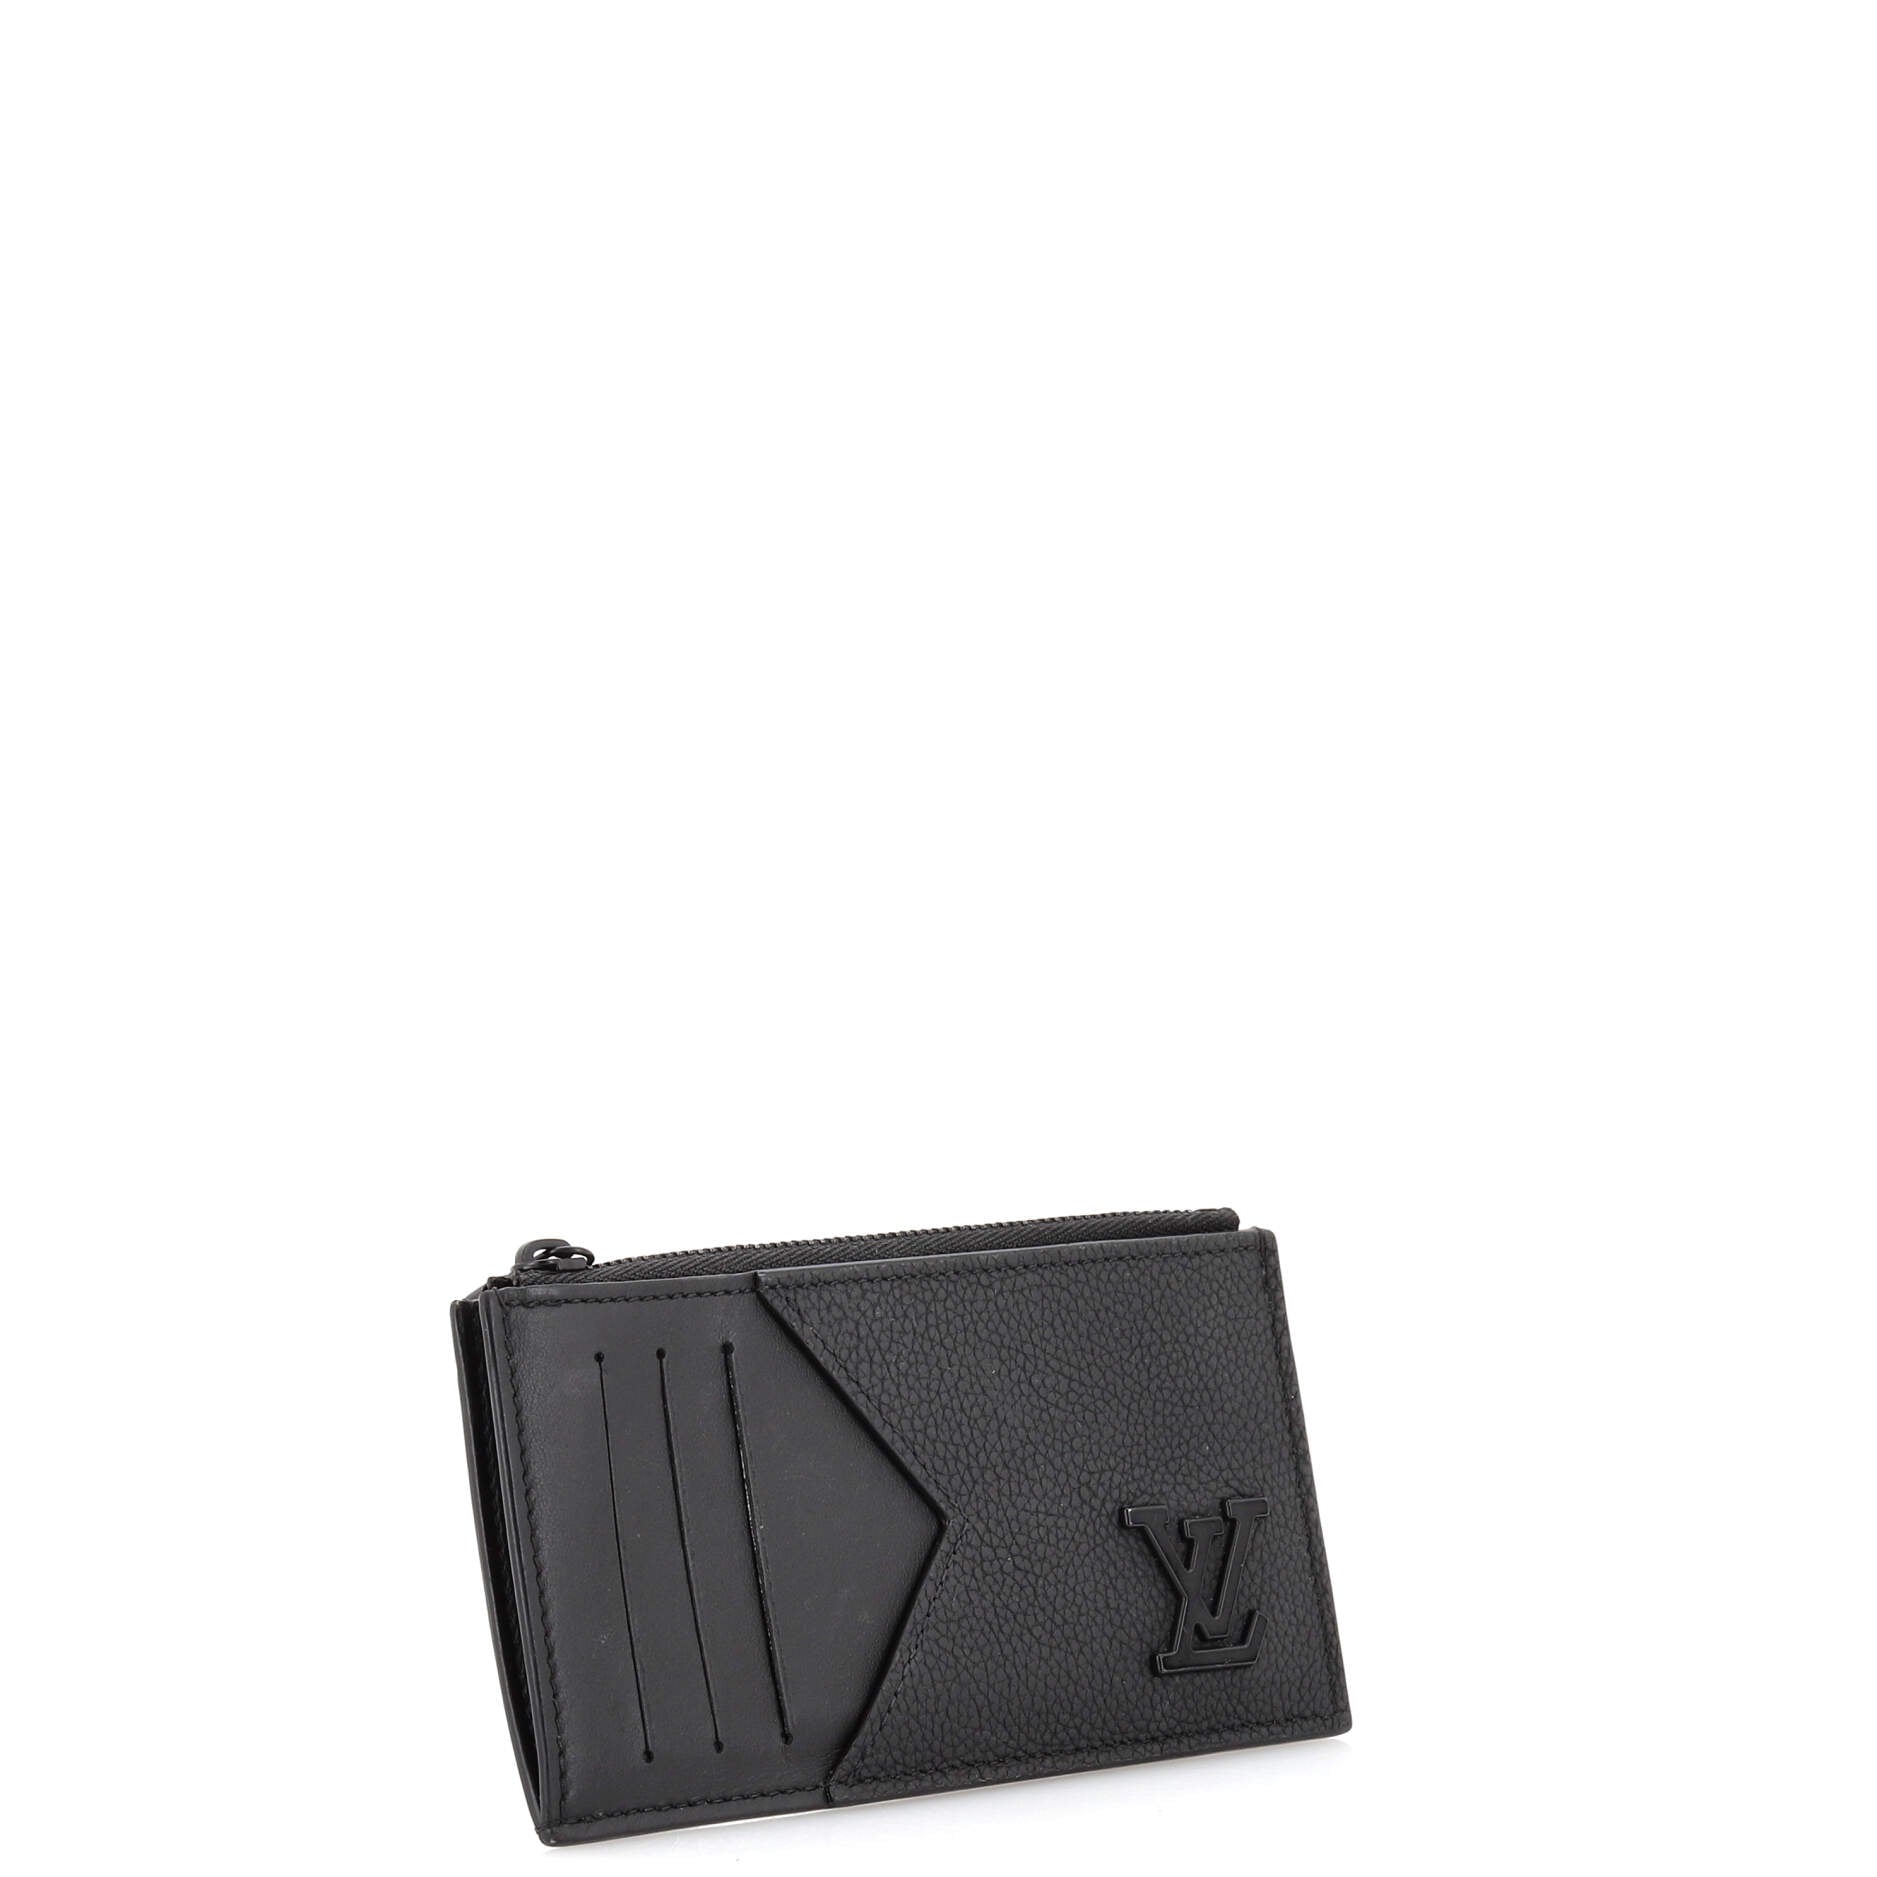 Louis Vuitton Cat Card Case Limited Edition Grace Coddington Epi